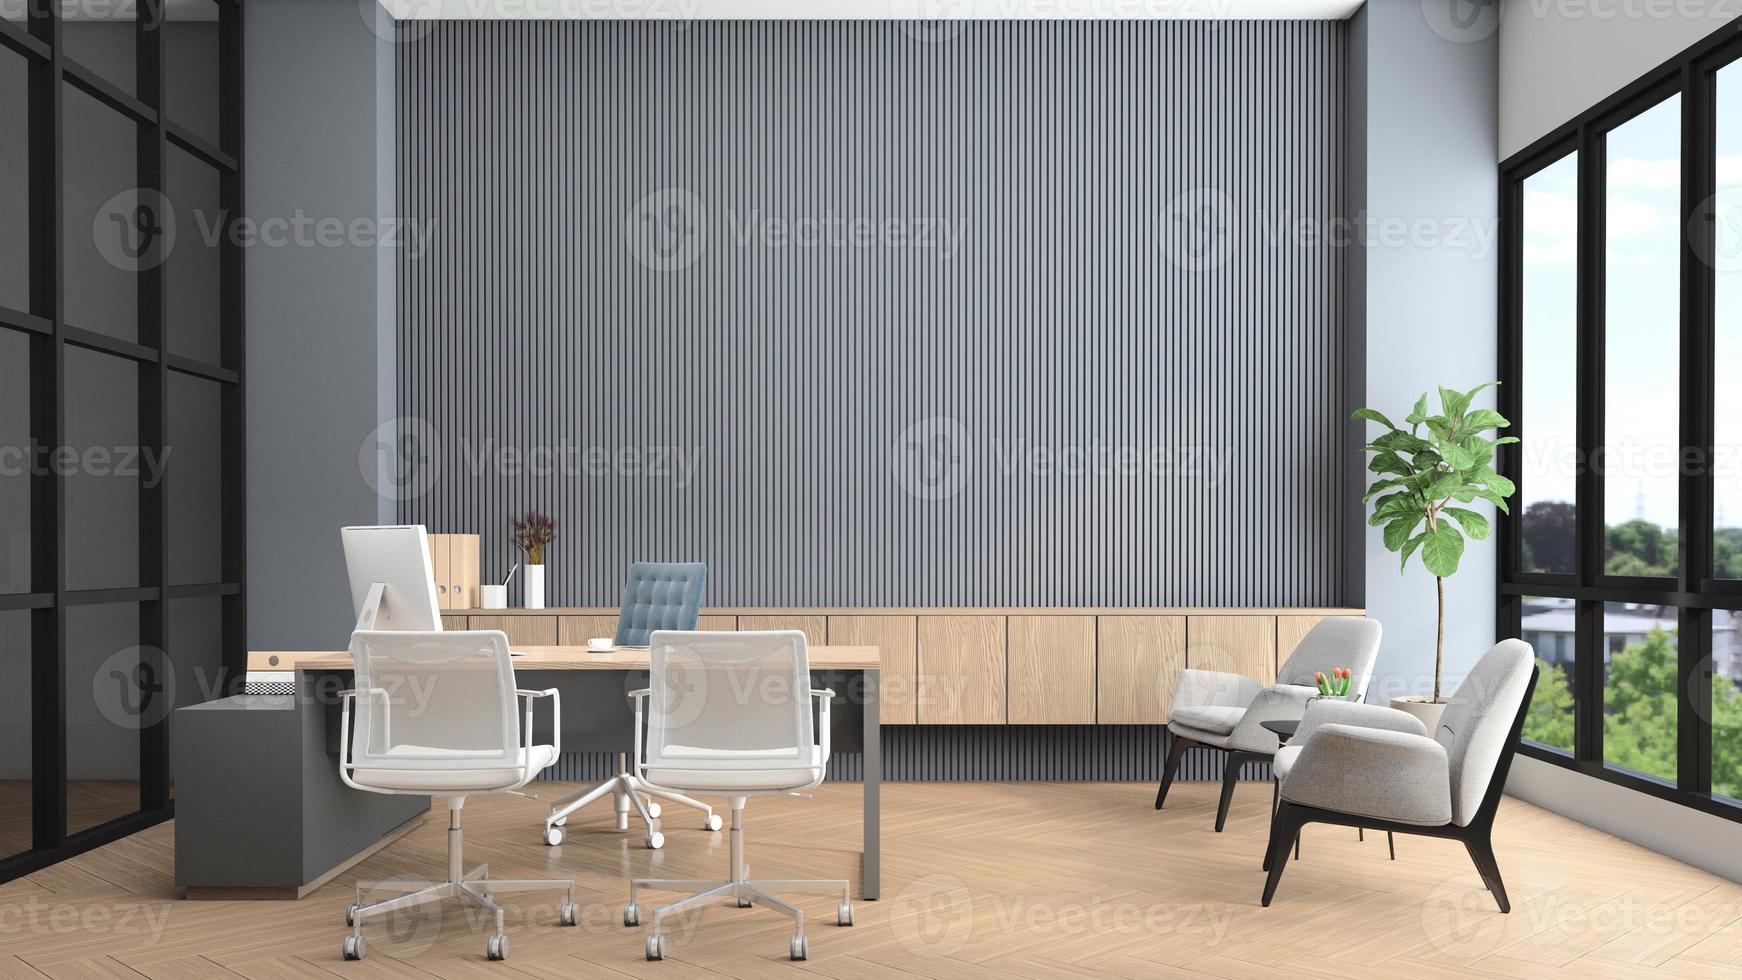 salle de direction moderne avec bureau et ordinateur, fauteuil, mur de lattes grises et armoire en bois intégrée. rendu 3d photo